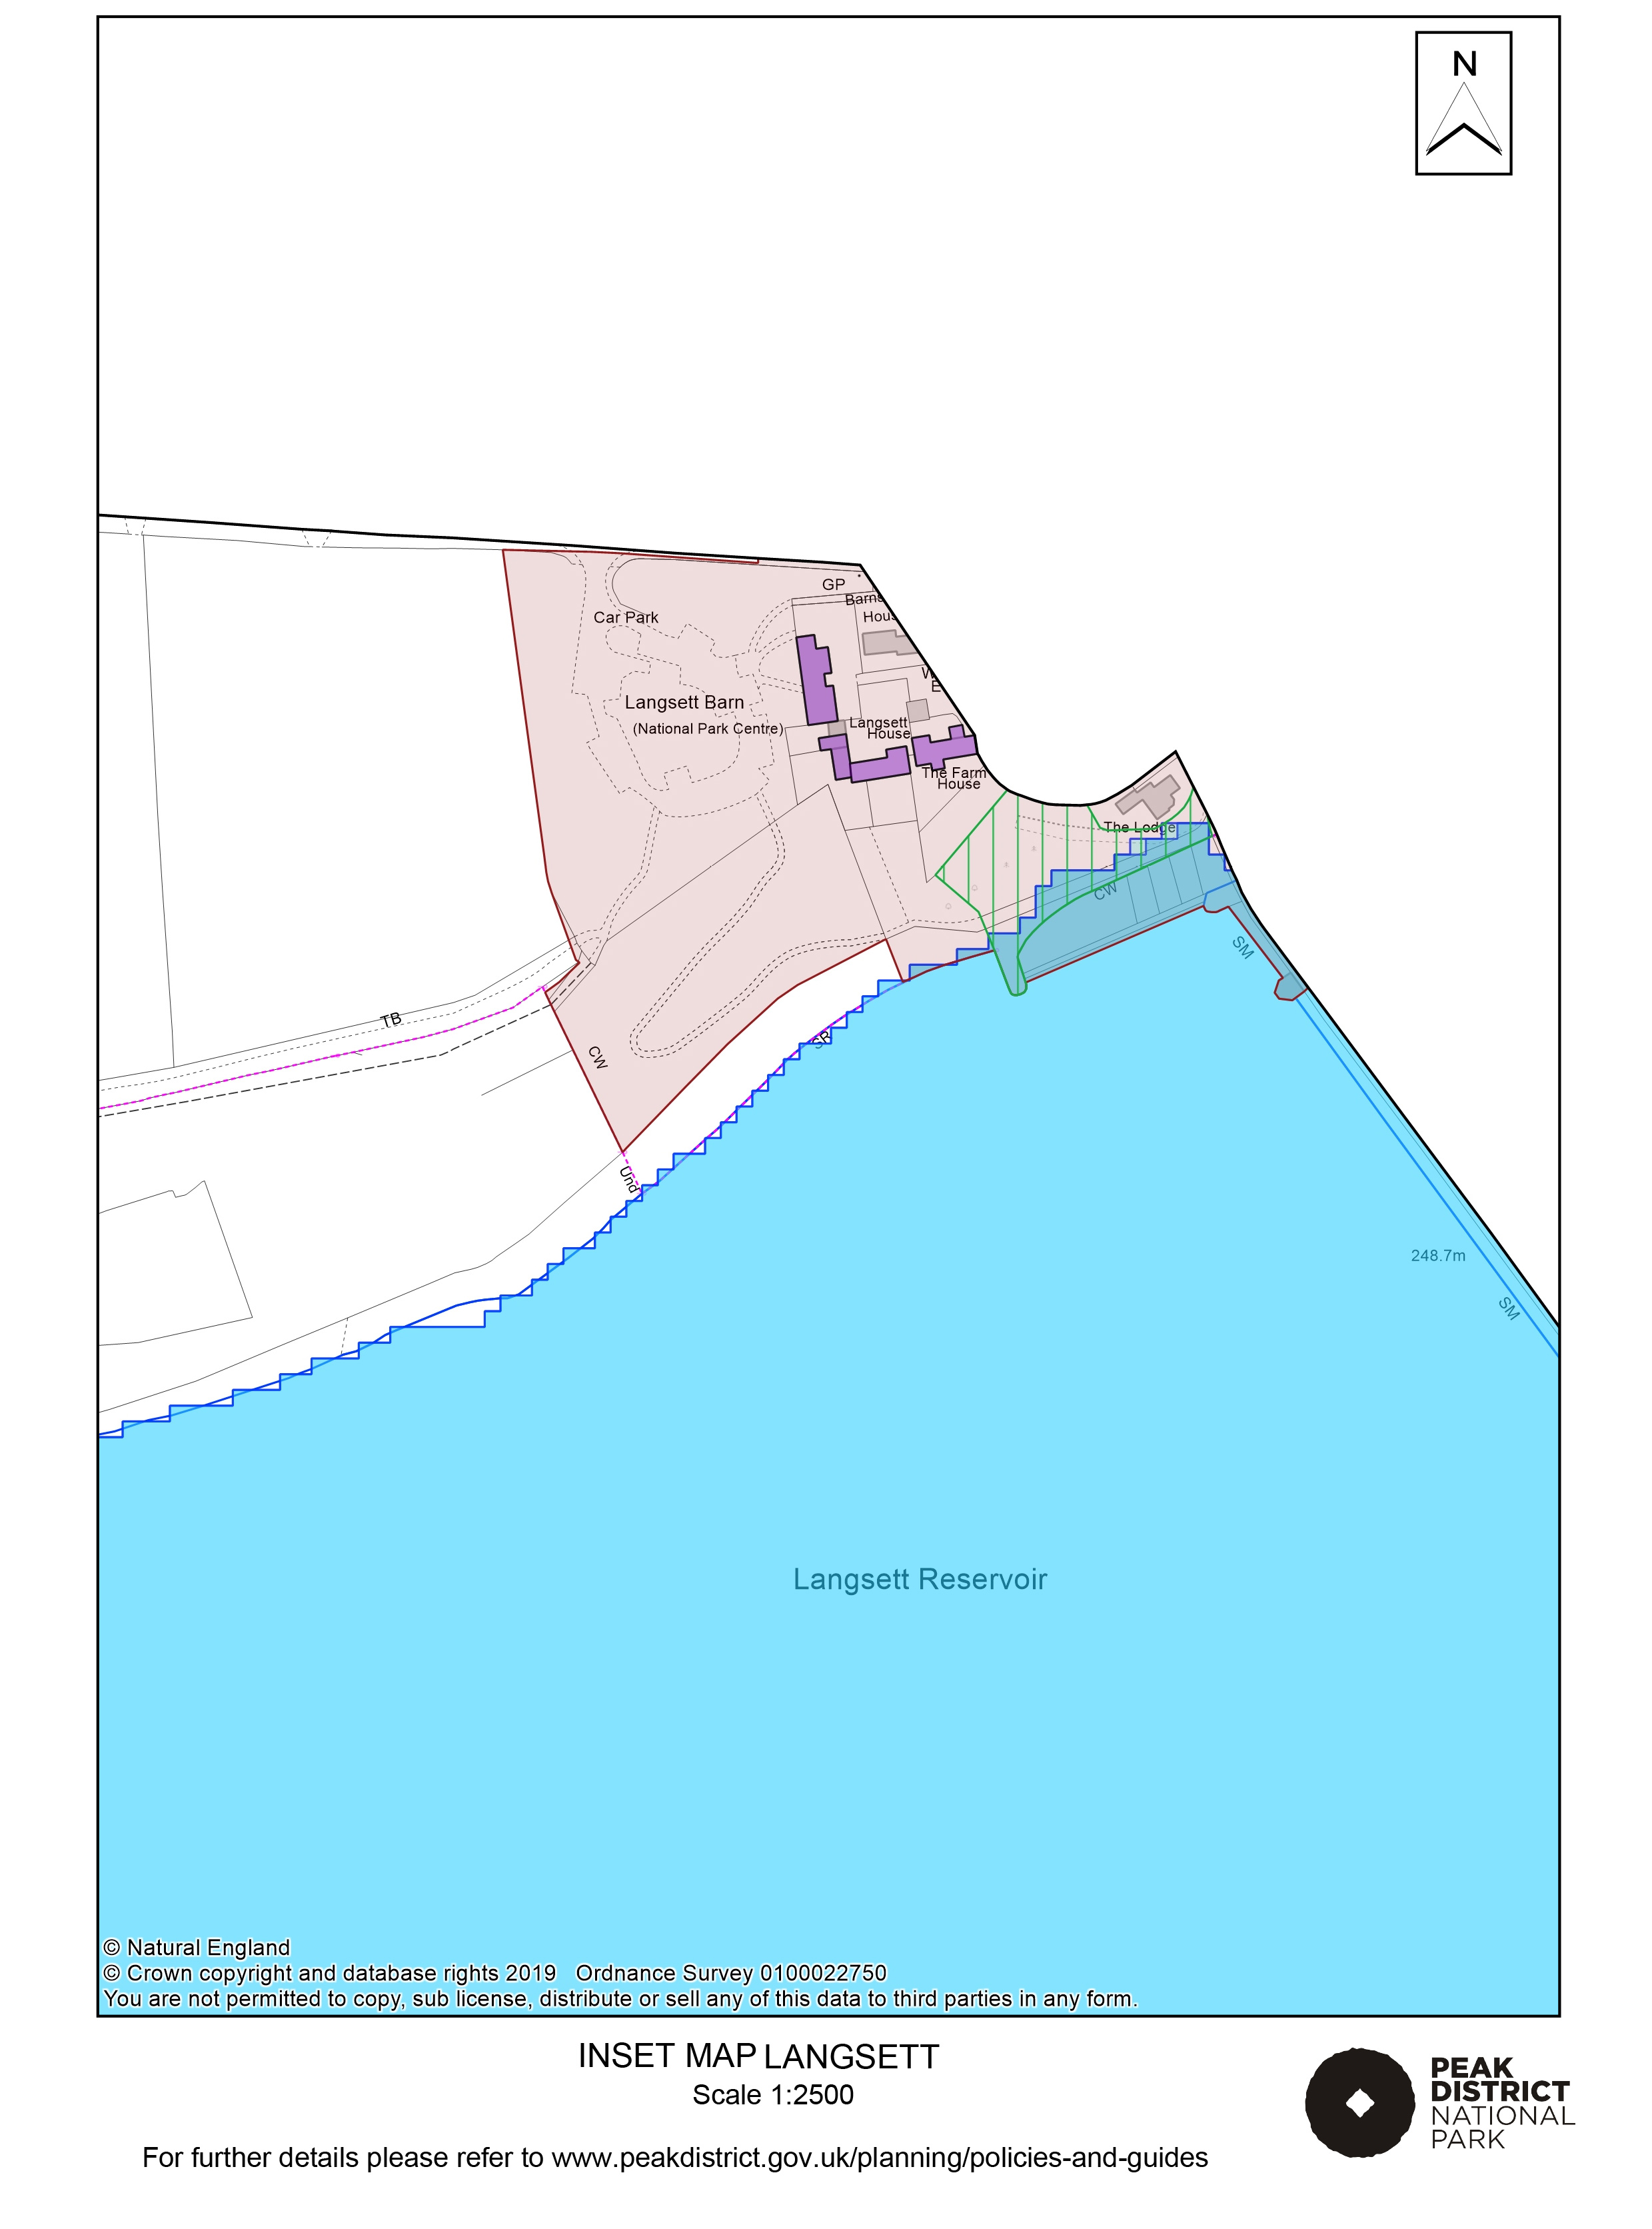 Local Plan Proposals Map: Langsett